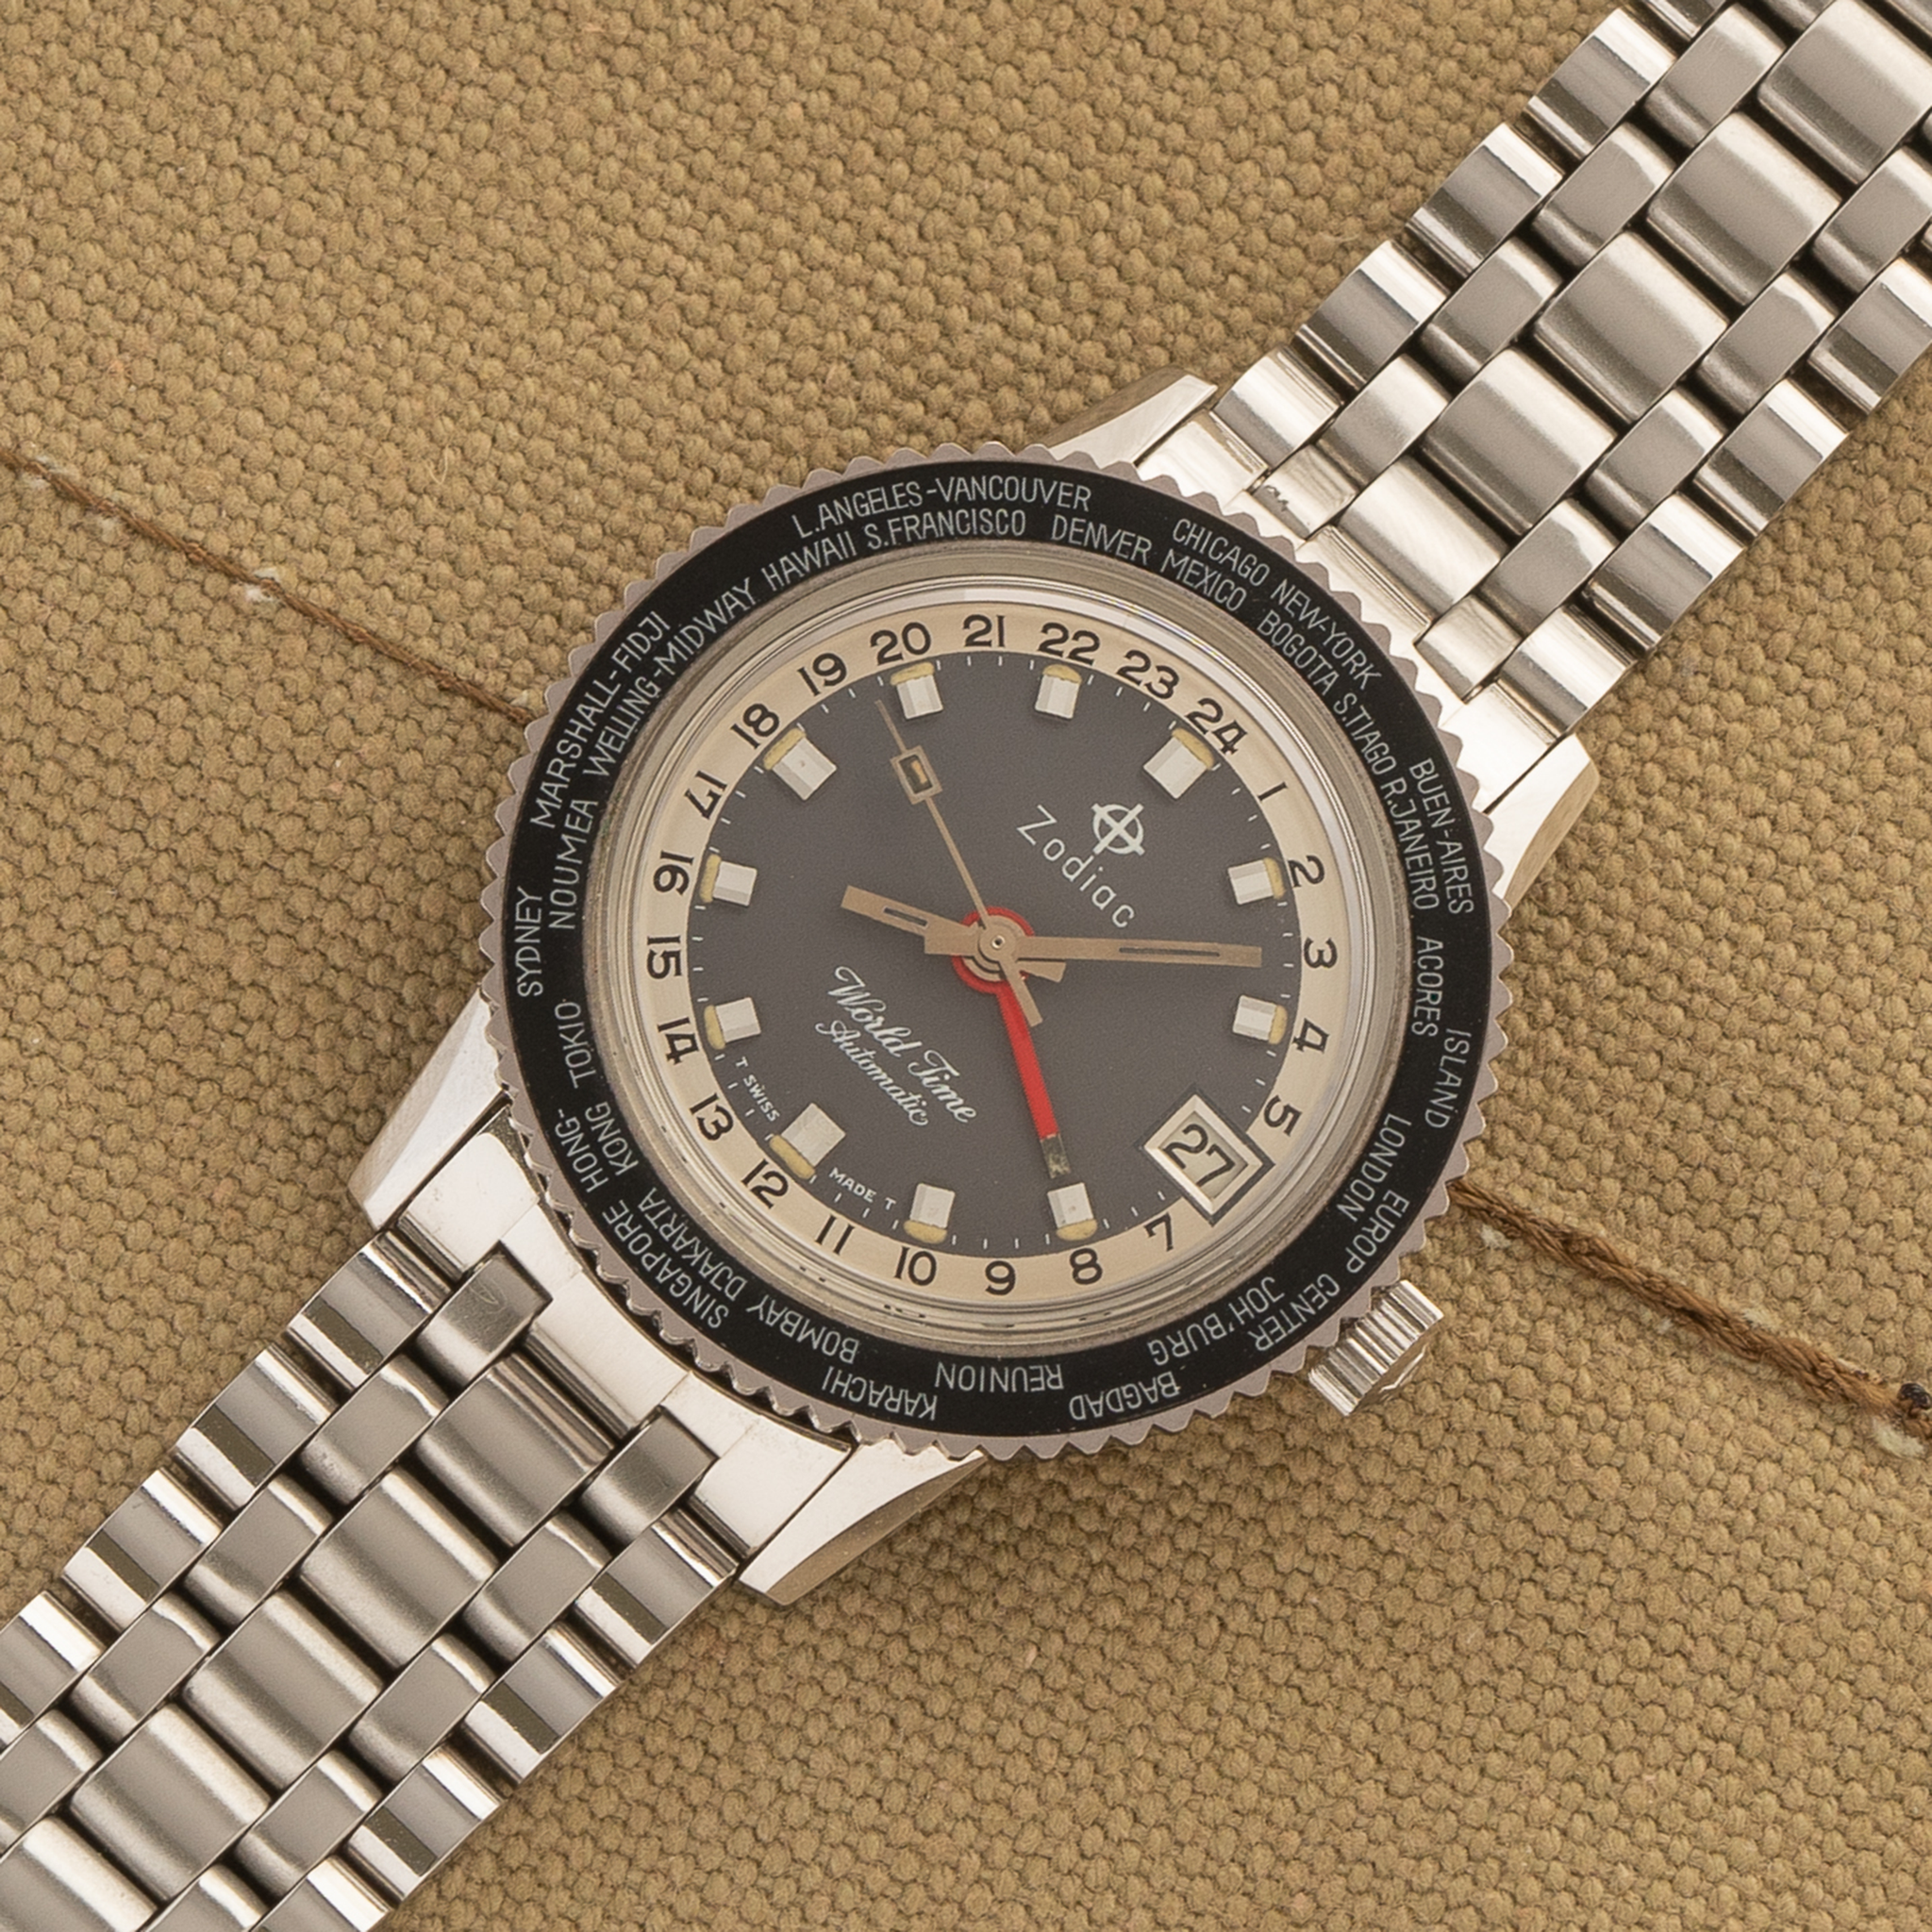 L.N.O.S. Zodiac Aerospace GMT World Time w/Bracelet/Box - 1970s